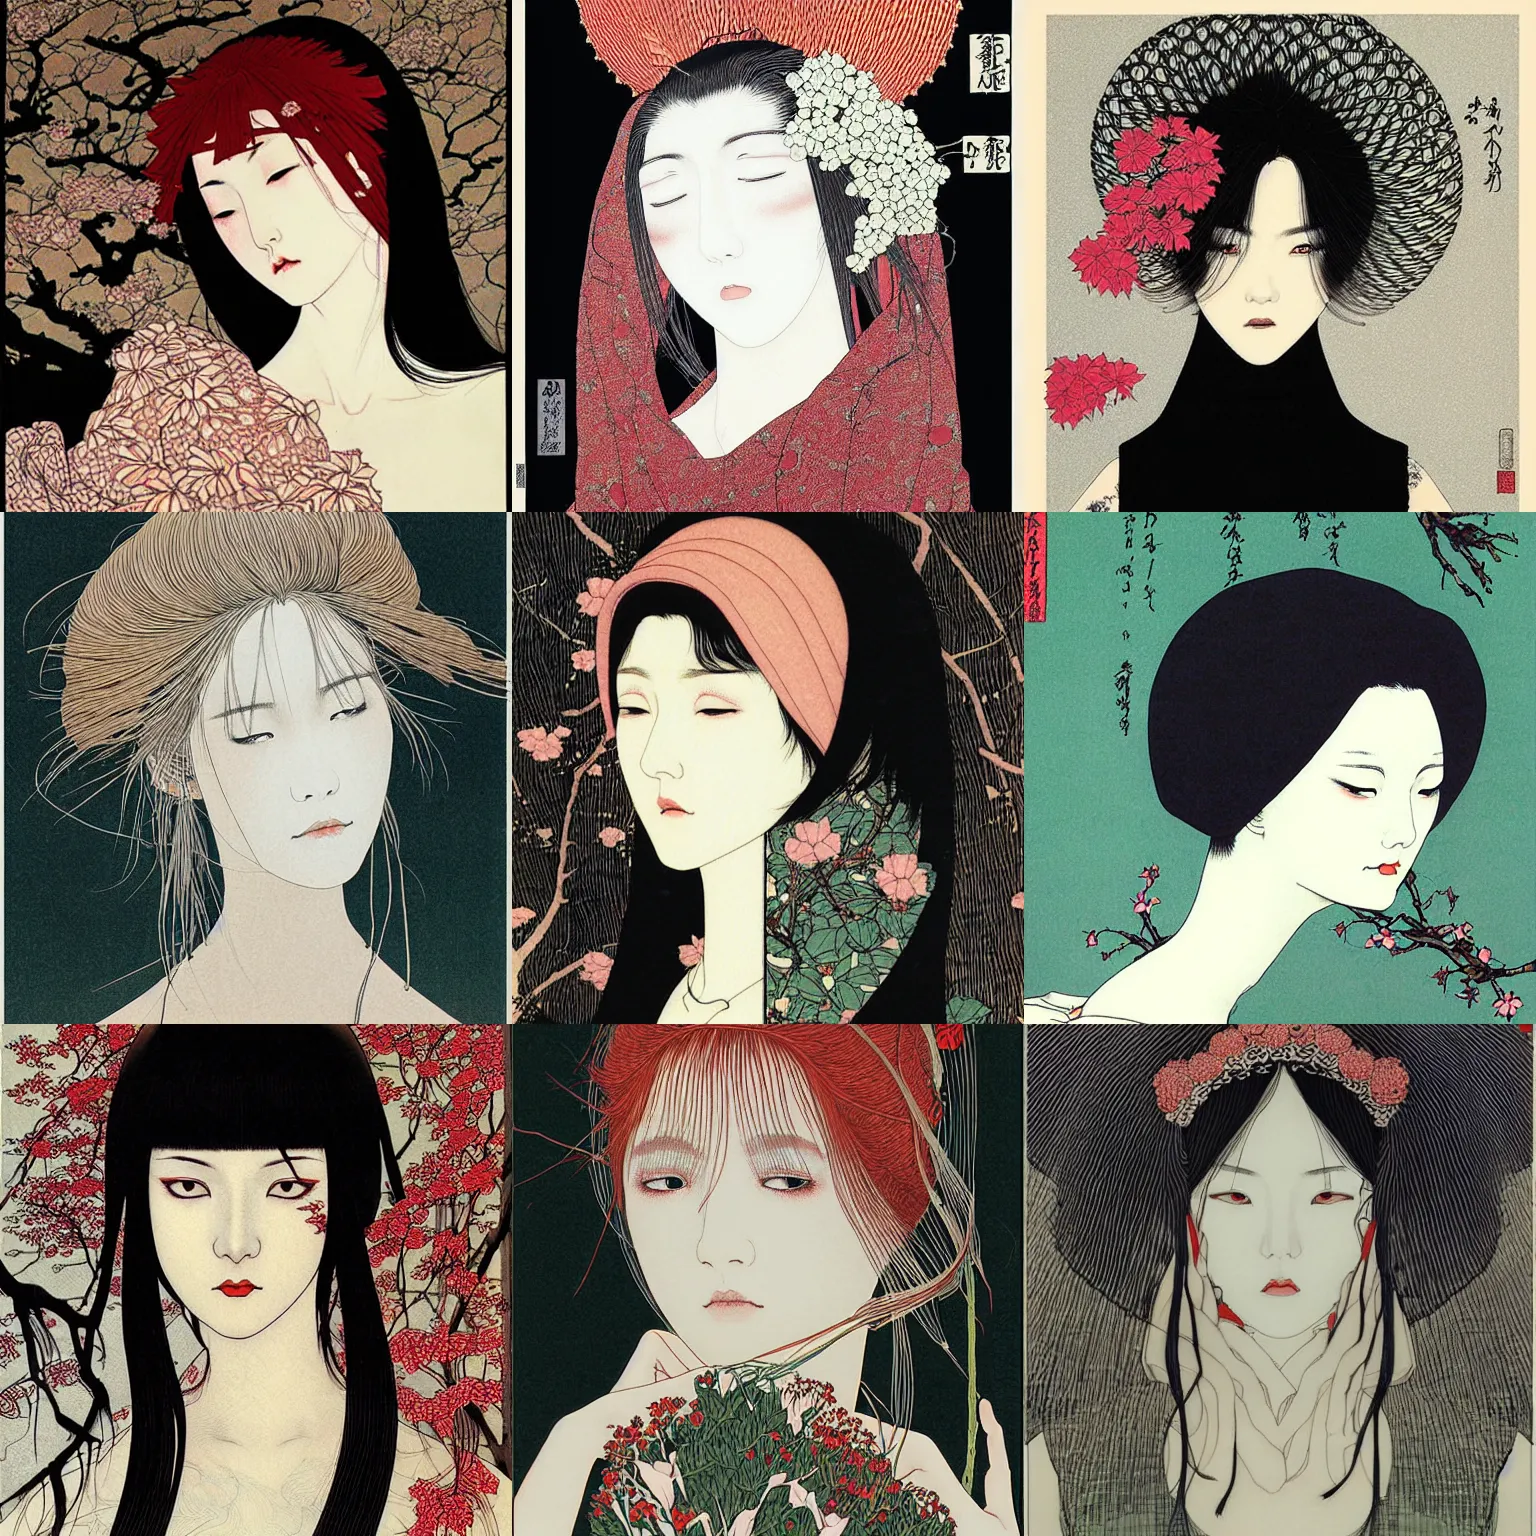 Prompt: woman, face, digital art by takato yamamoto